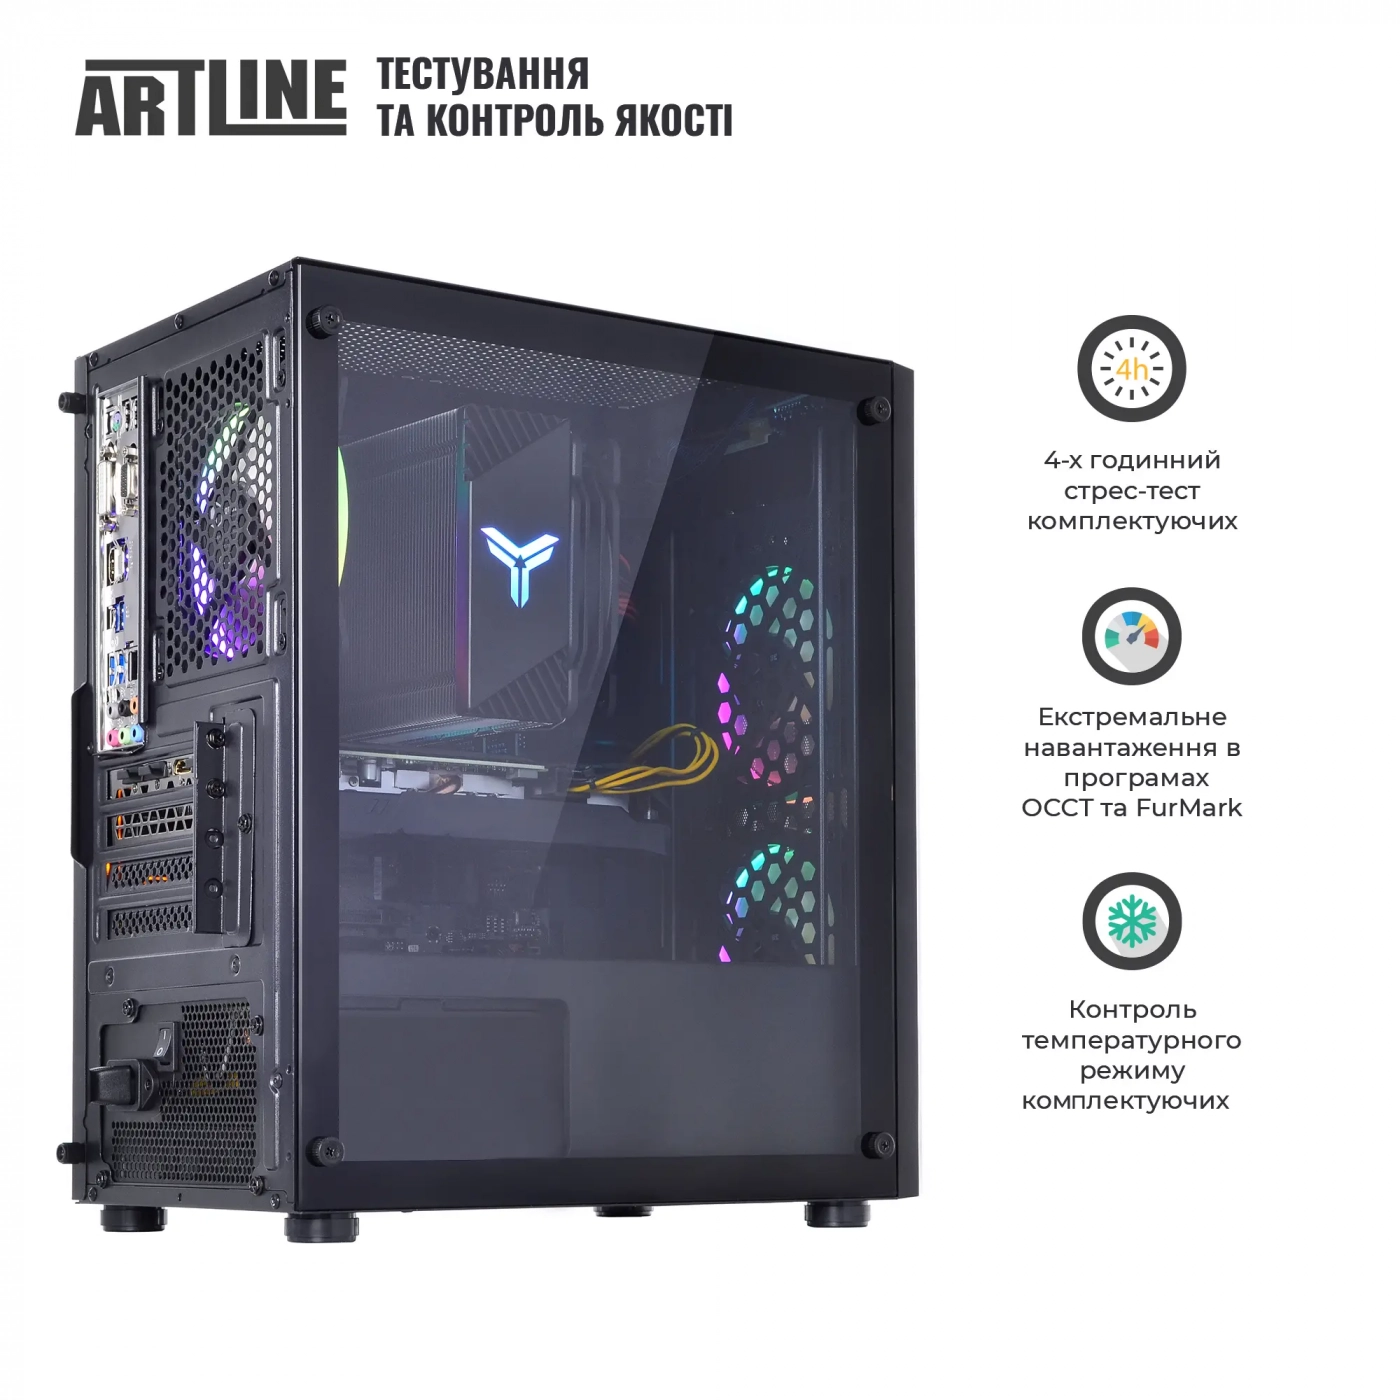 Купить Компьютер ARTLINE Gaming X63v23 - фото 8